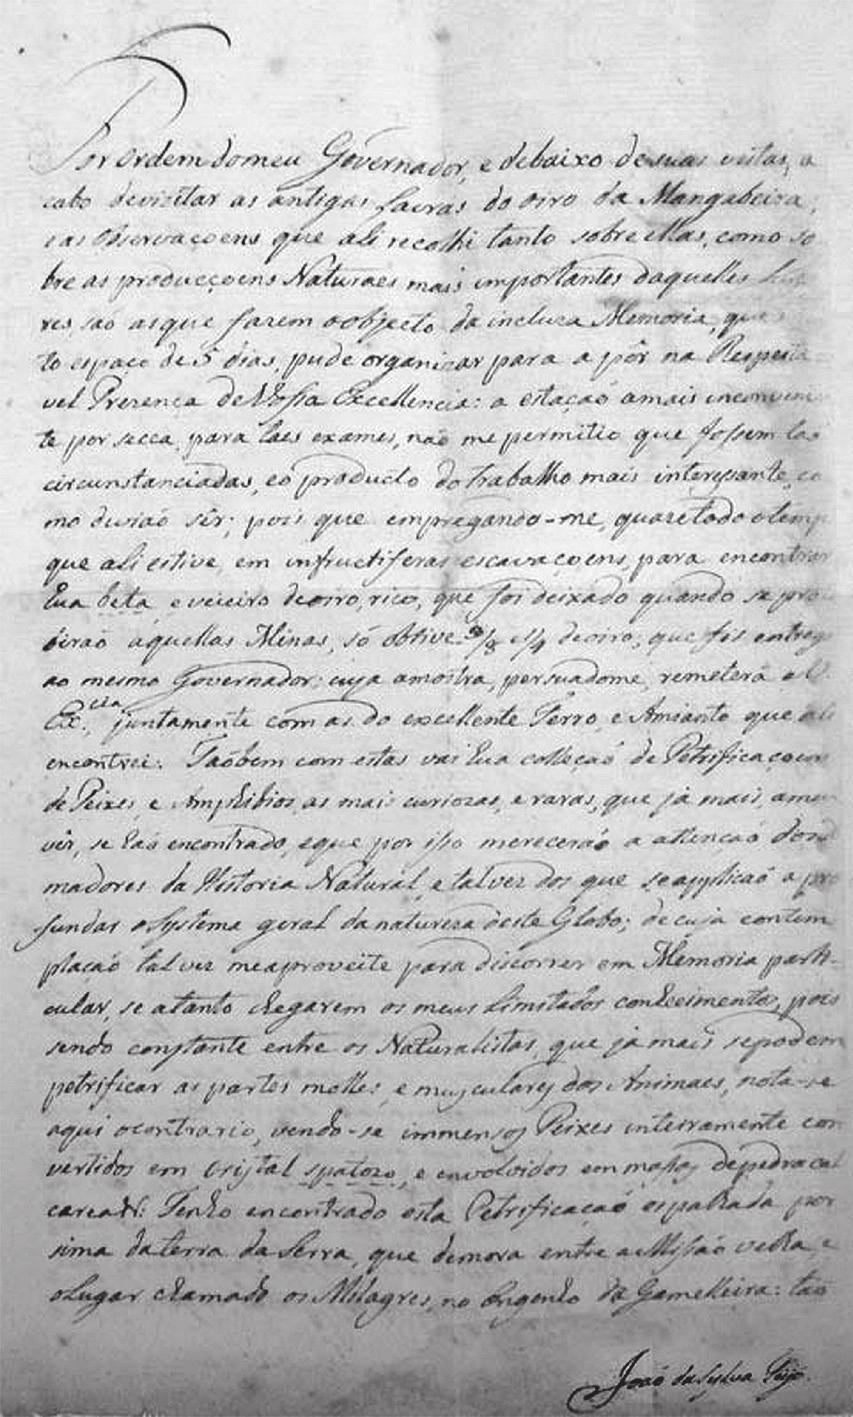 172 Revista do Instituto do Ceará - 2008 A obra foi anunciada na Gazeta do Rio de Janeiro de 9 jun. 1810.